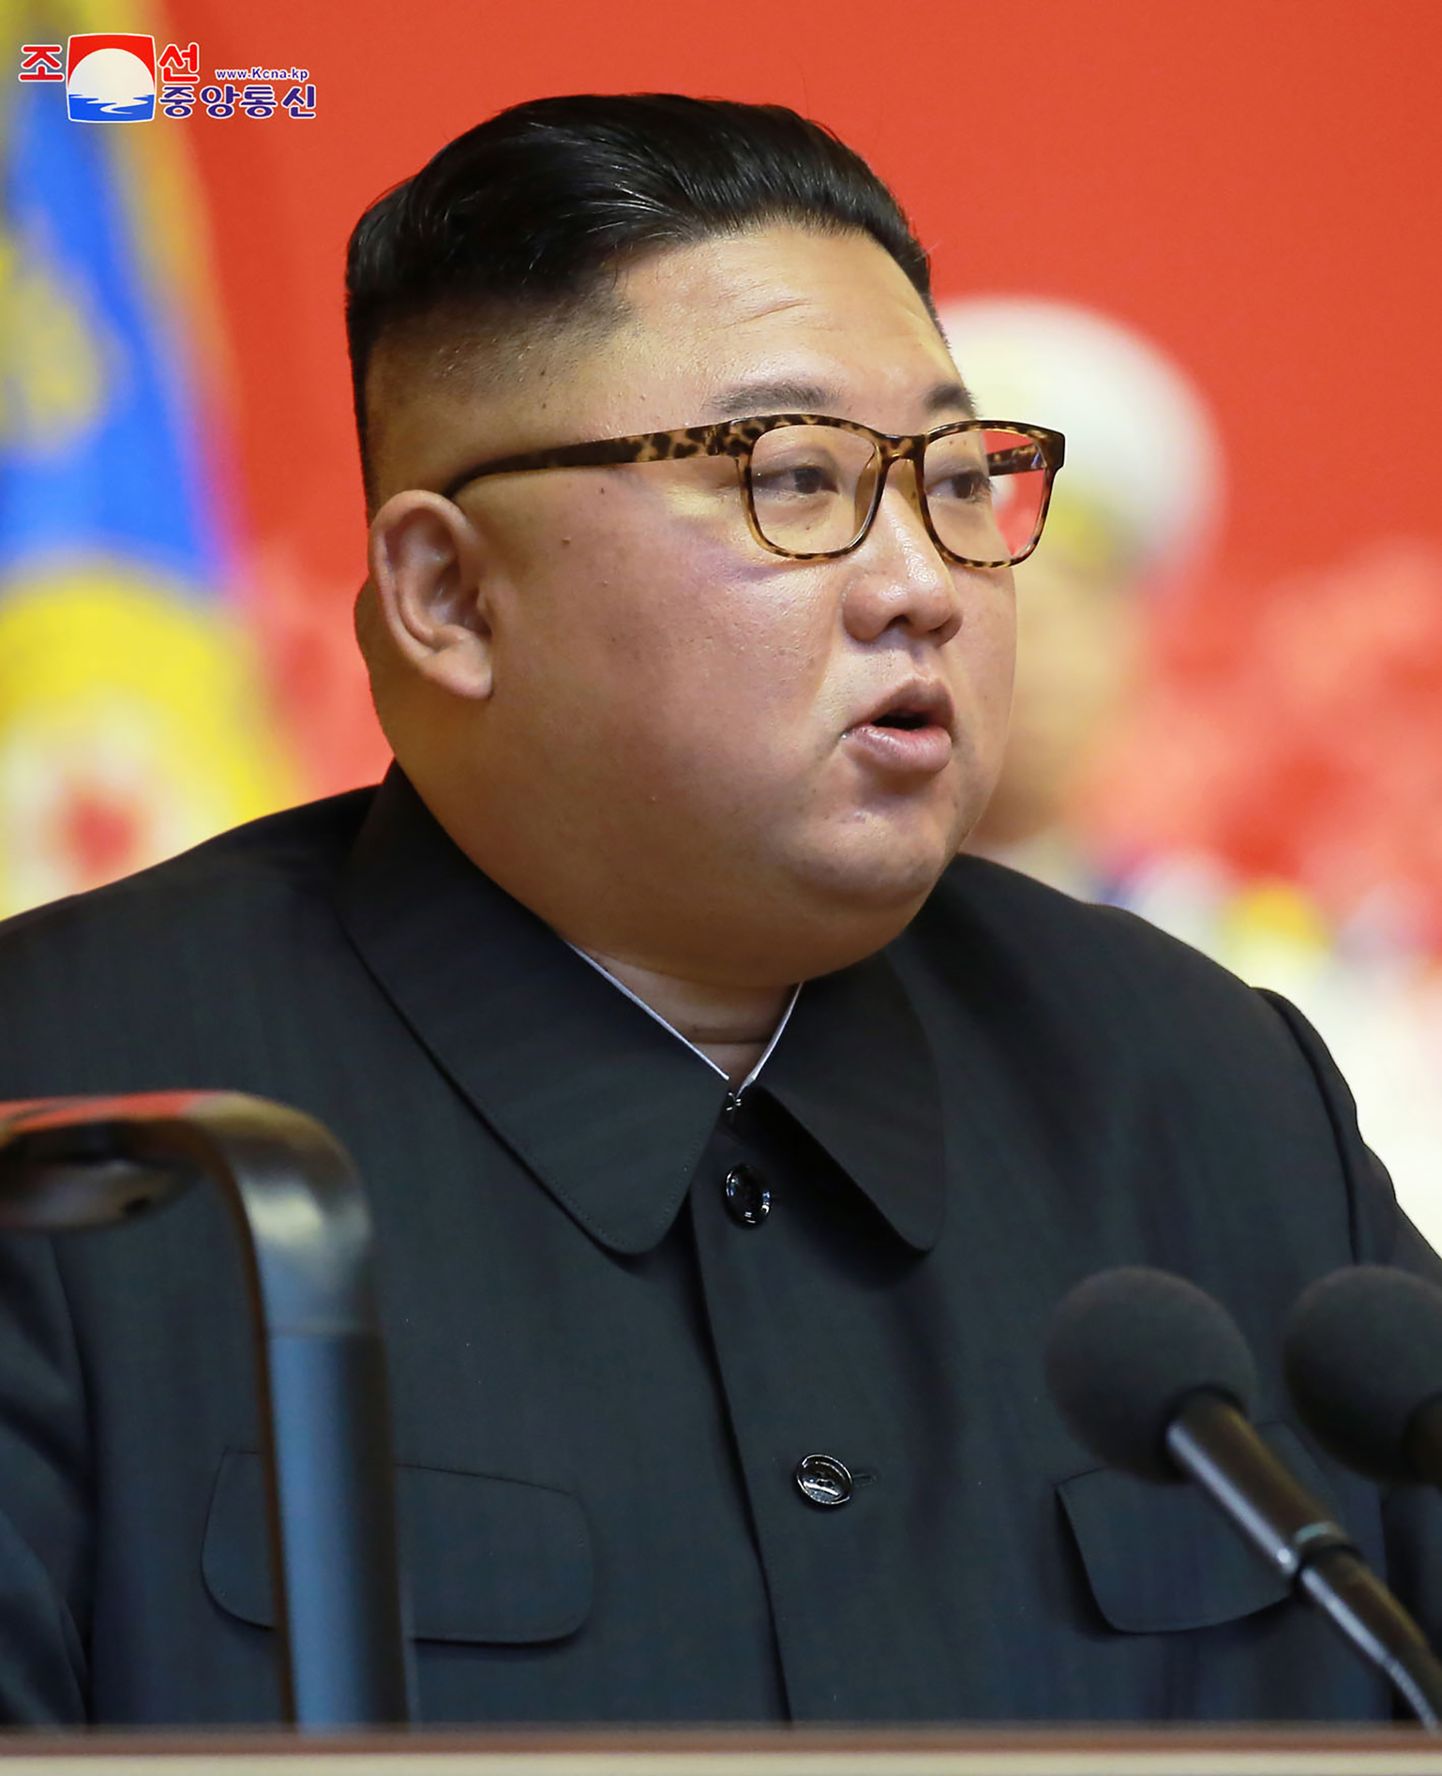 Põhja-Korea liider Kim Jong-un kuulutas riigis koroonakahtluse tõttu välja eriolukorra